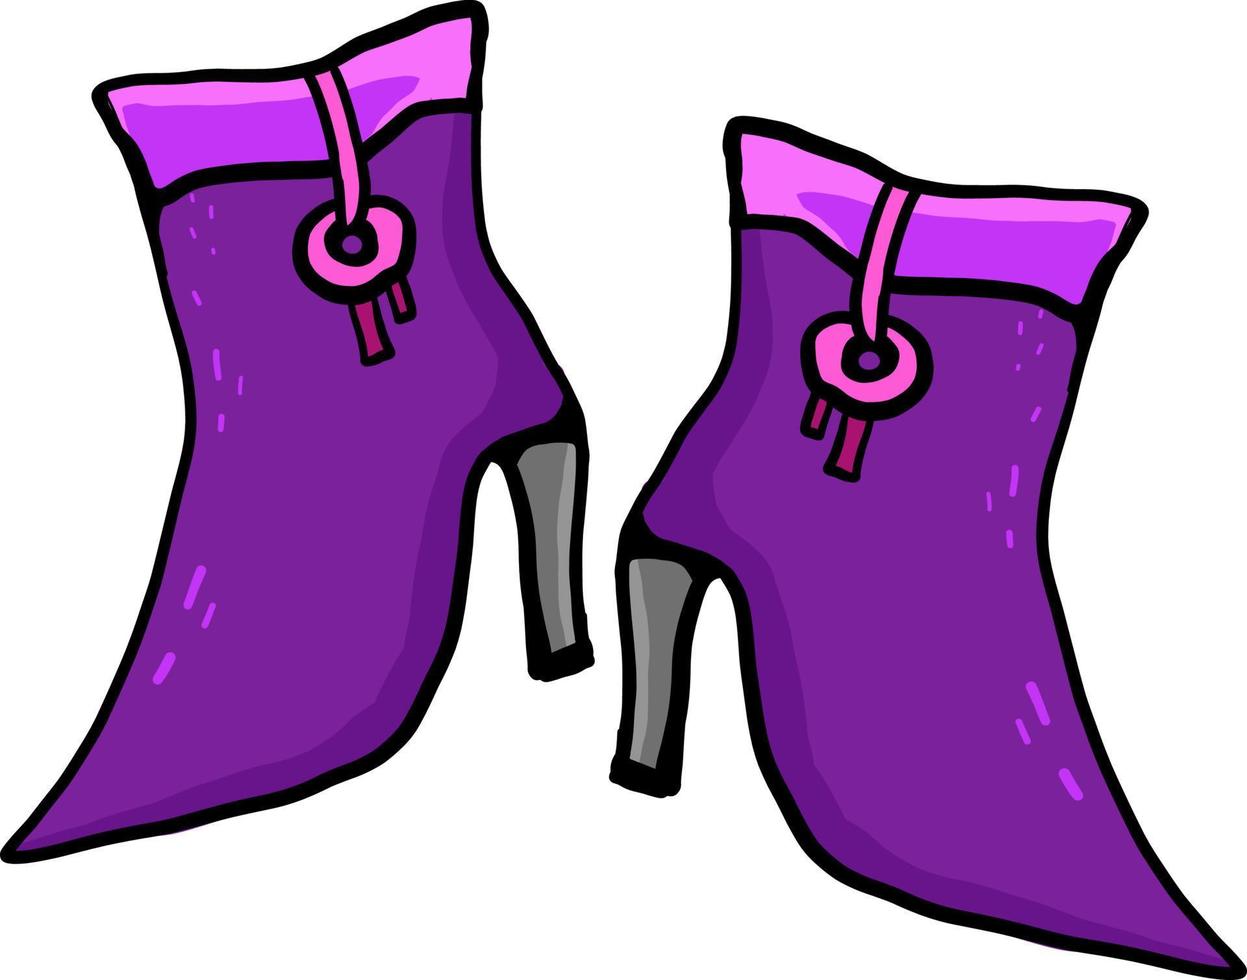 Tacones violetas, ilustración, vector sobre fondo blanco.